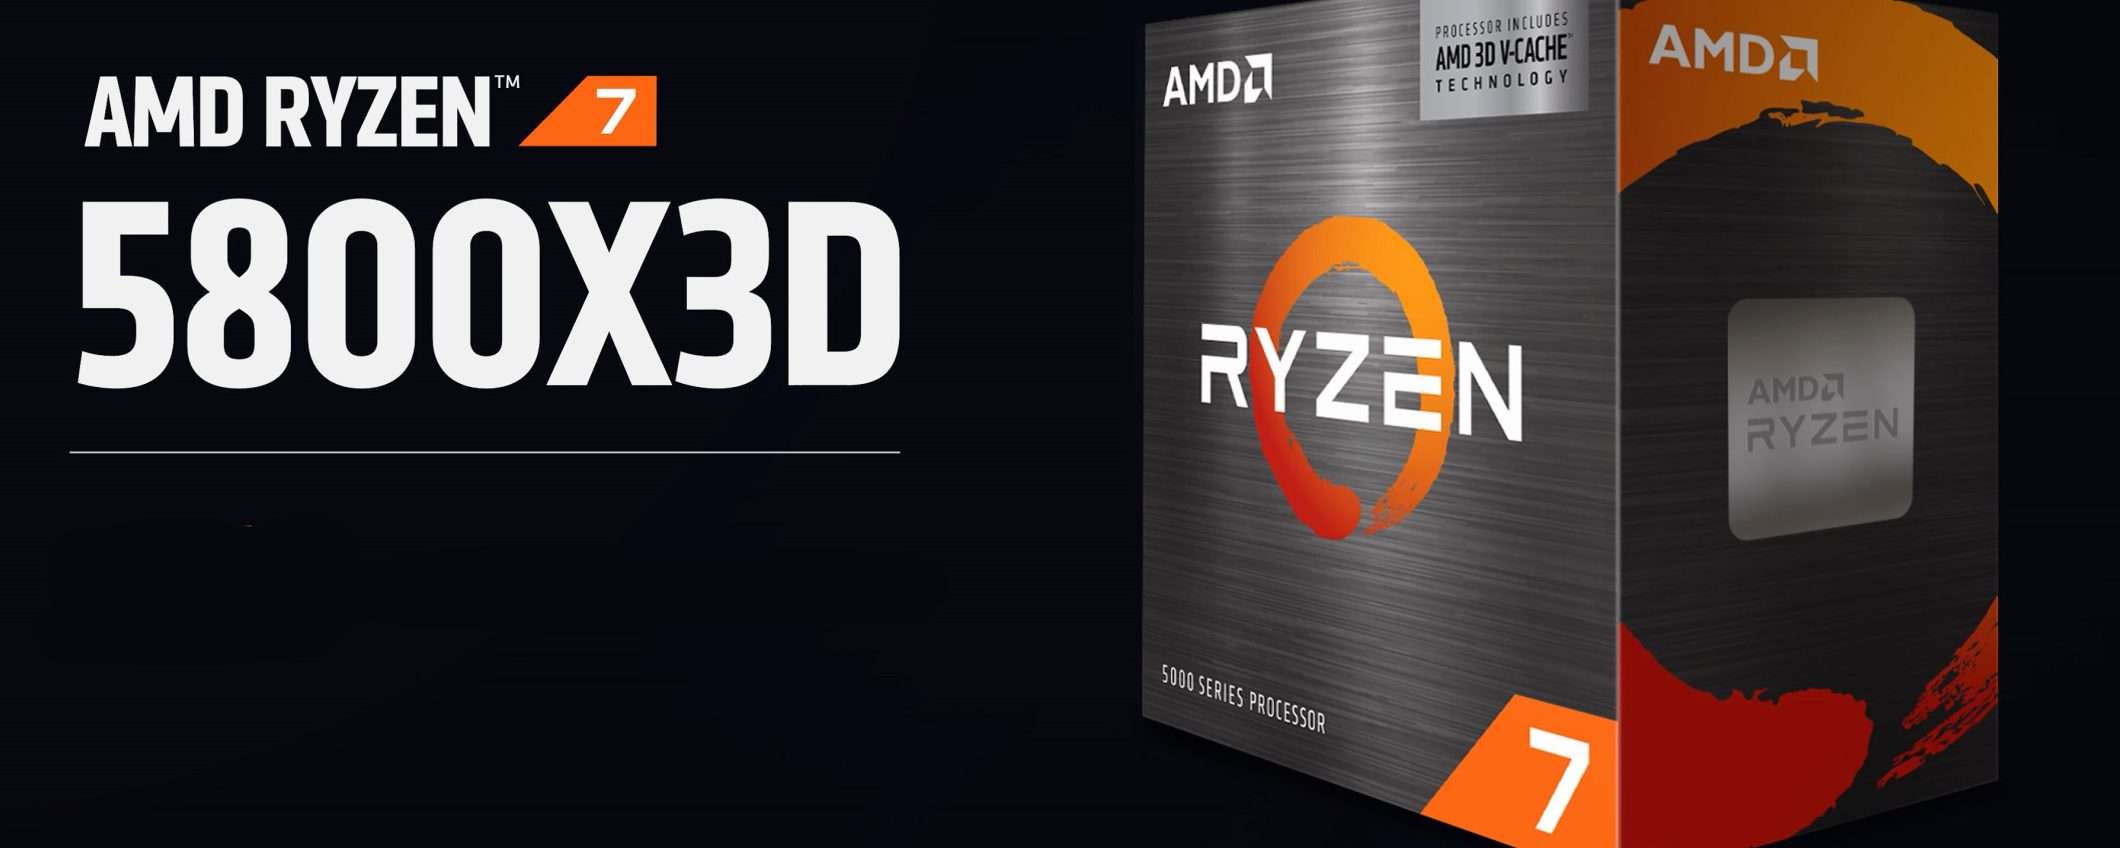 AMD Ryzen 7 5800X3D in vendita dal 20 aprile